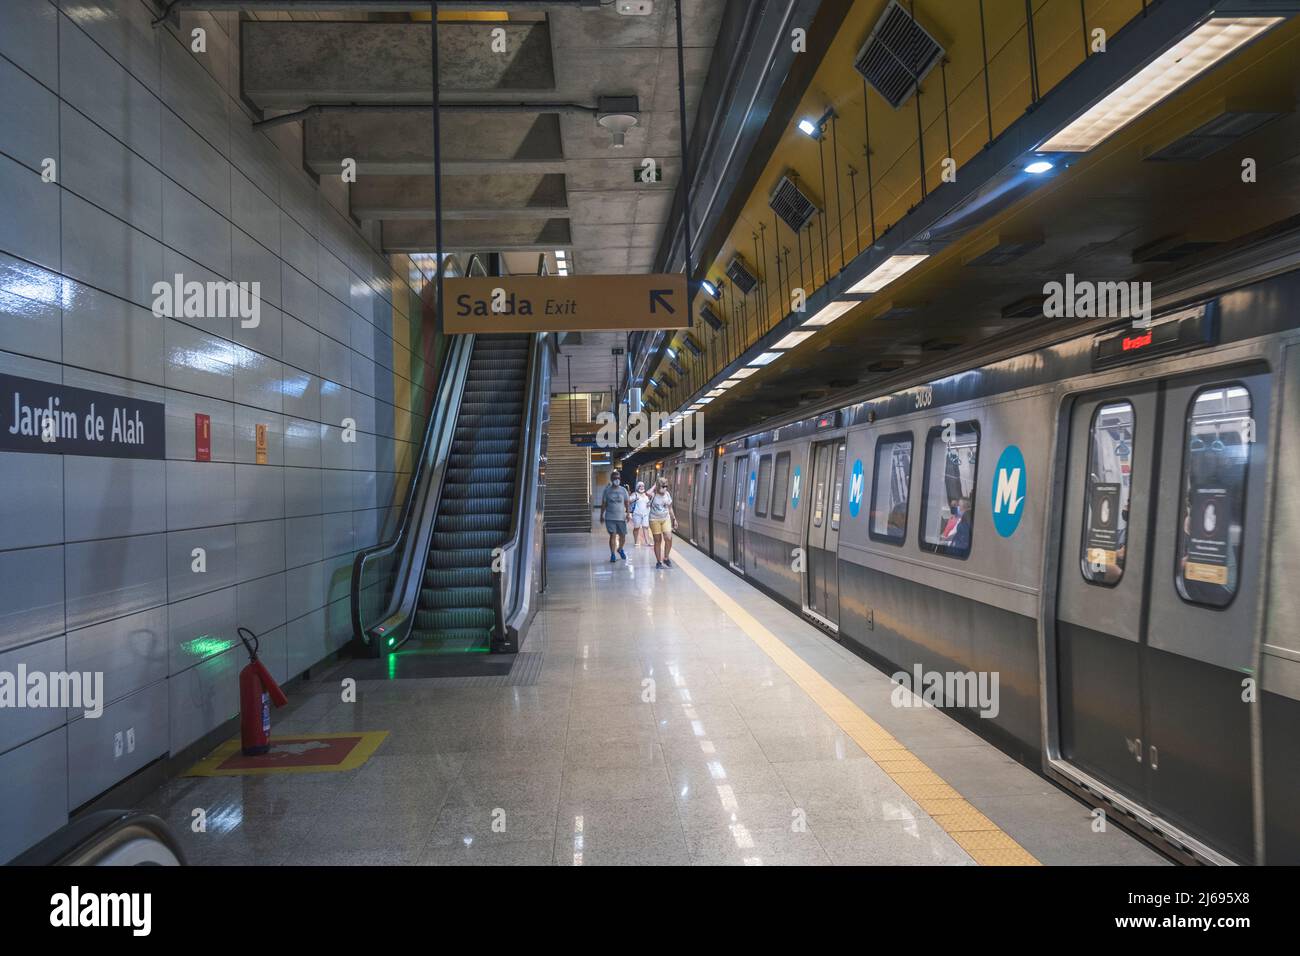 Interior de la estación de metro Jardim de Alah, tren subterráneo en la plataforma, Río de Janeiro, Brasil Foto de stock